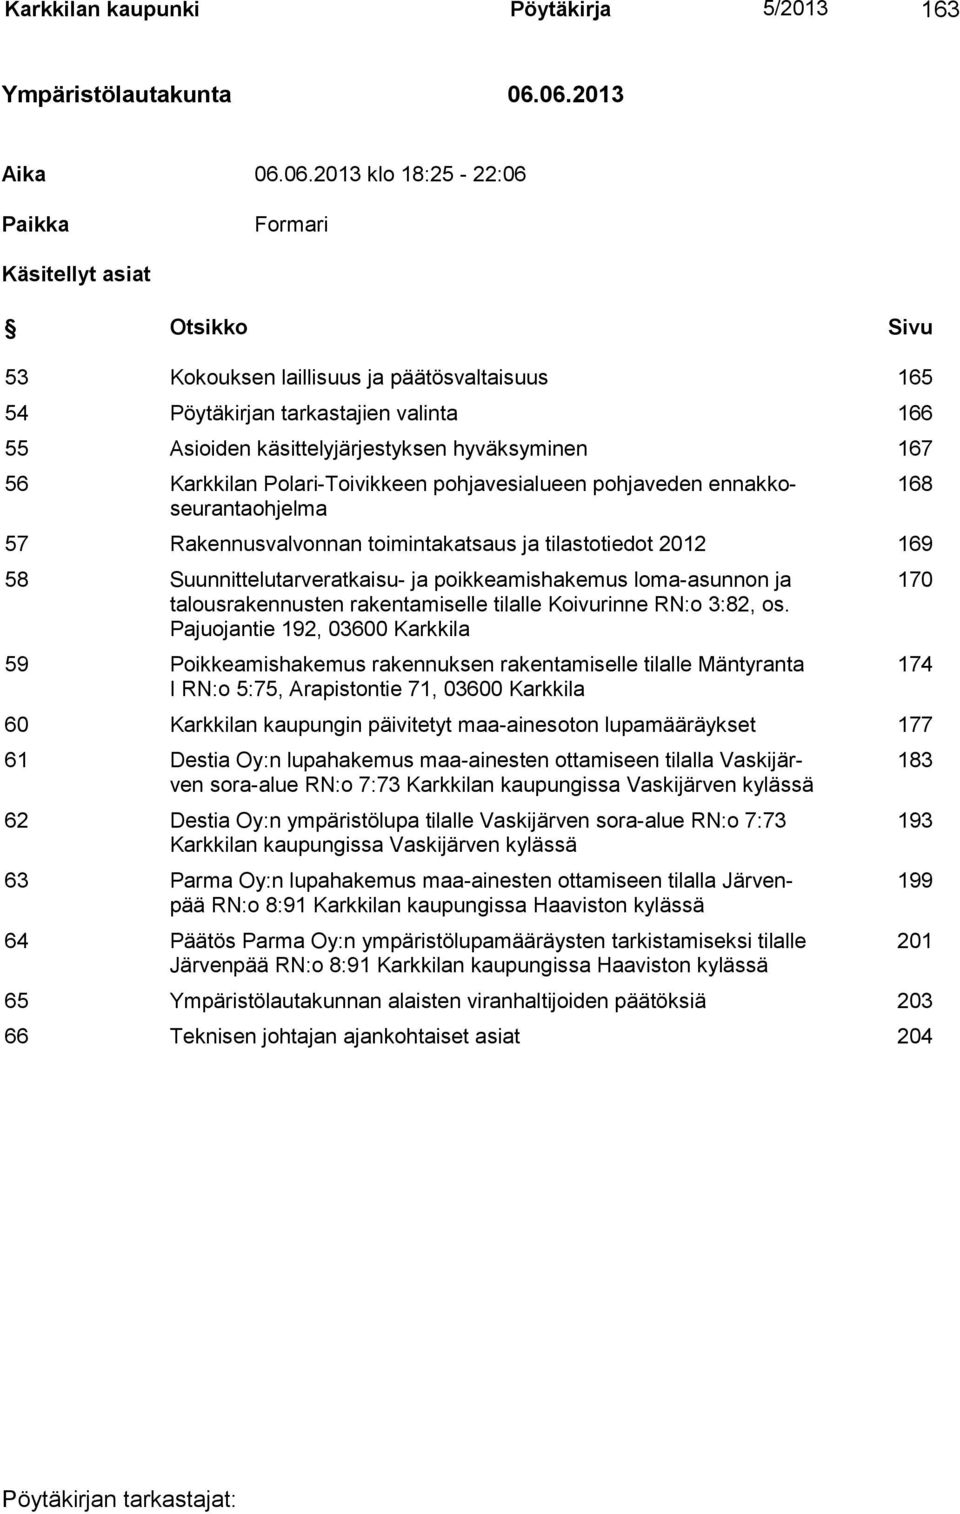 käsittelyjärjestyksen hyväksyminen 167 56 Karkkilan Polari-Toivikkeen pohjavesialueen pohjaveden ennakkoseurantaohjelma 57 Rakennusvalvonnan toimintakatsaus ja tilastotiedot 2012 169 58